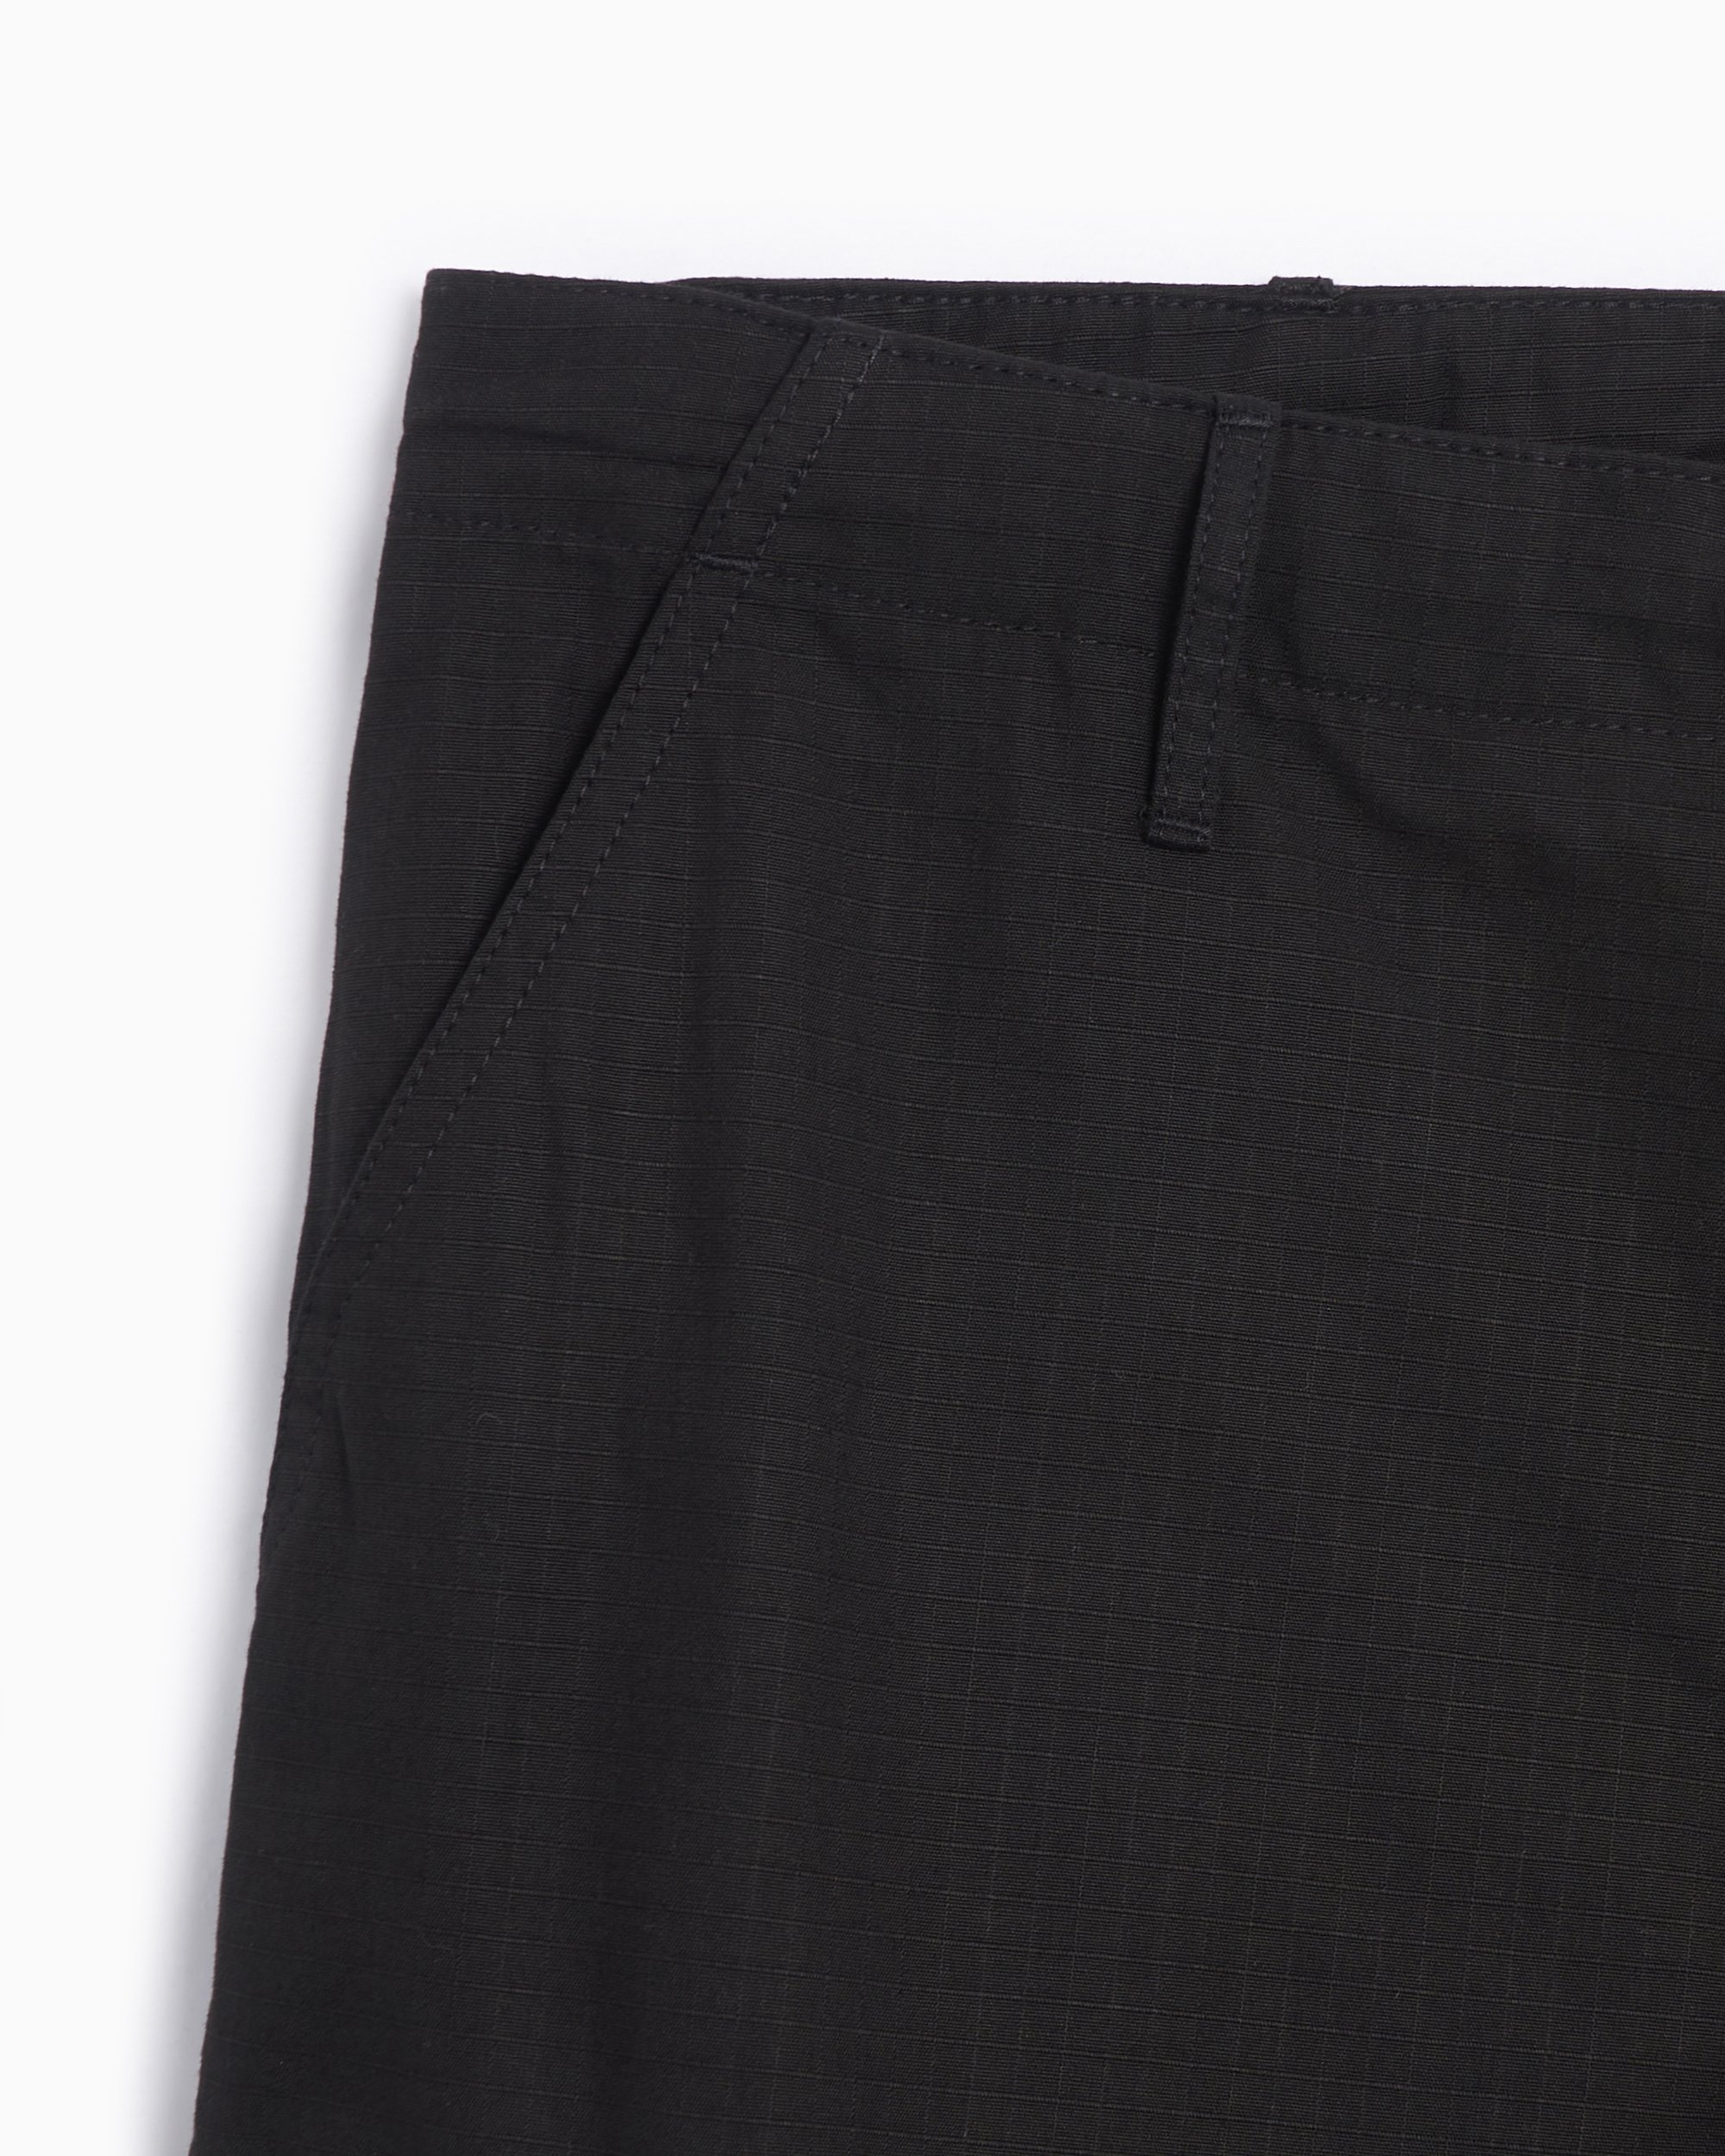 Kenzo Men's Work Pants Black FE55PA2429DL-99| Buy Online at